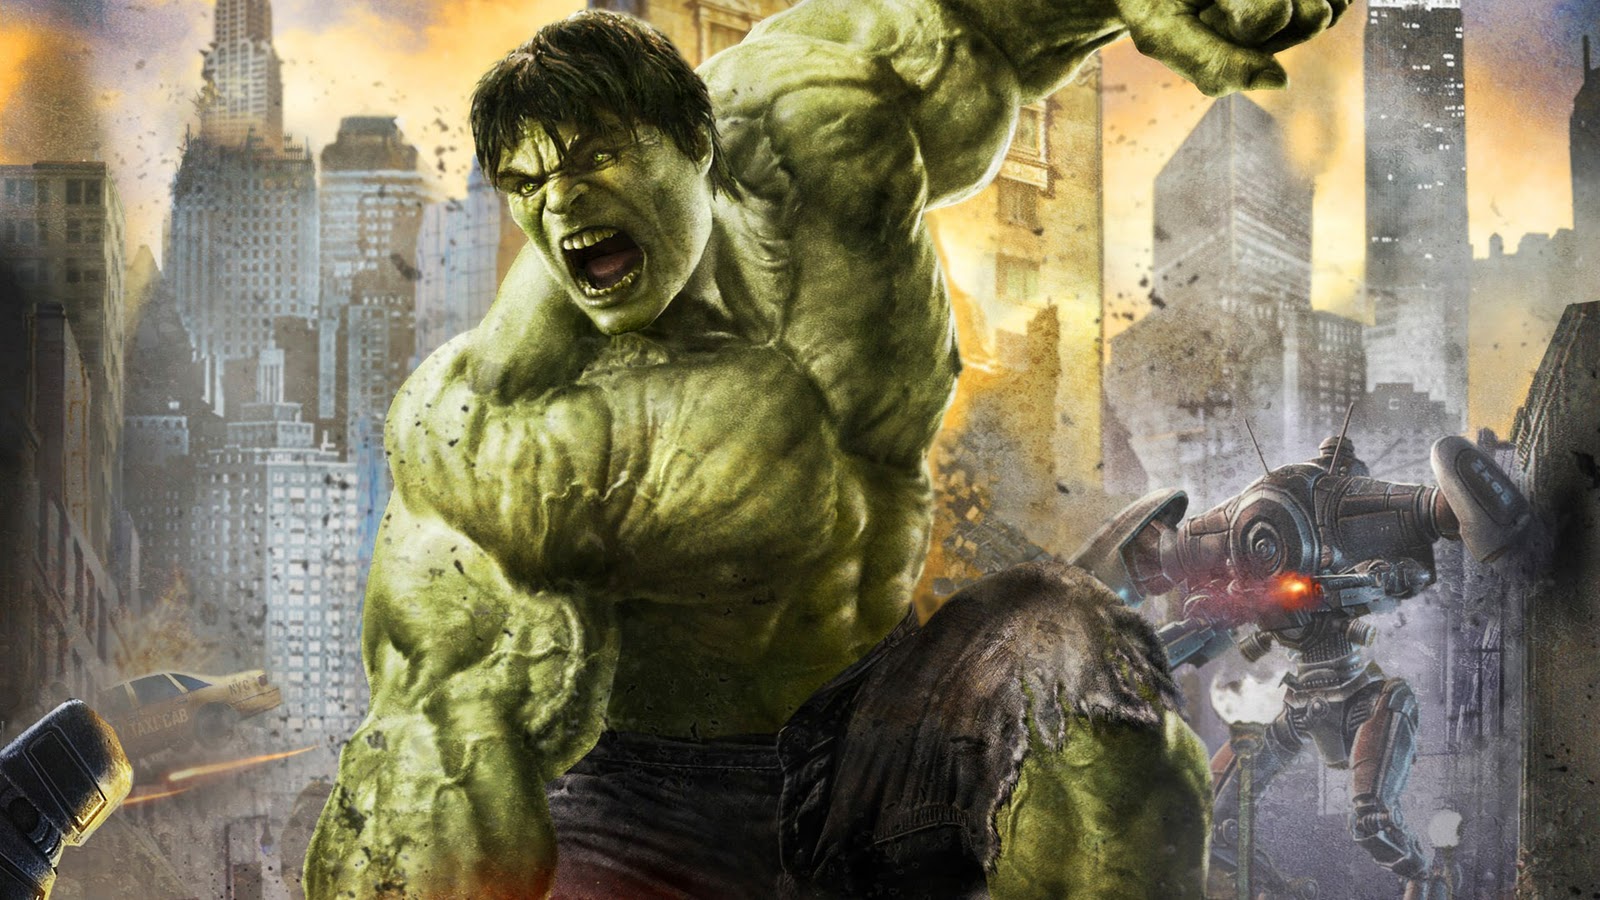 Descargar fondos de escritorio de El Increíble Hulk HD